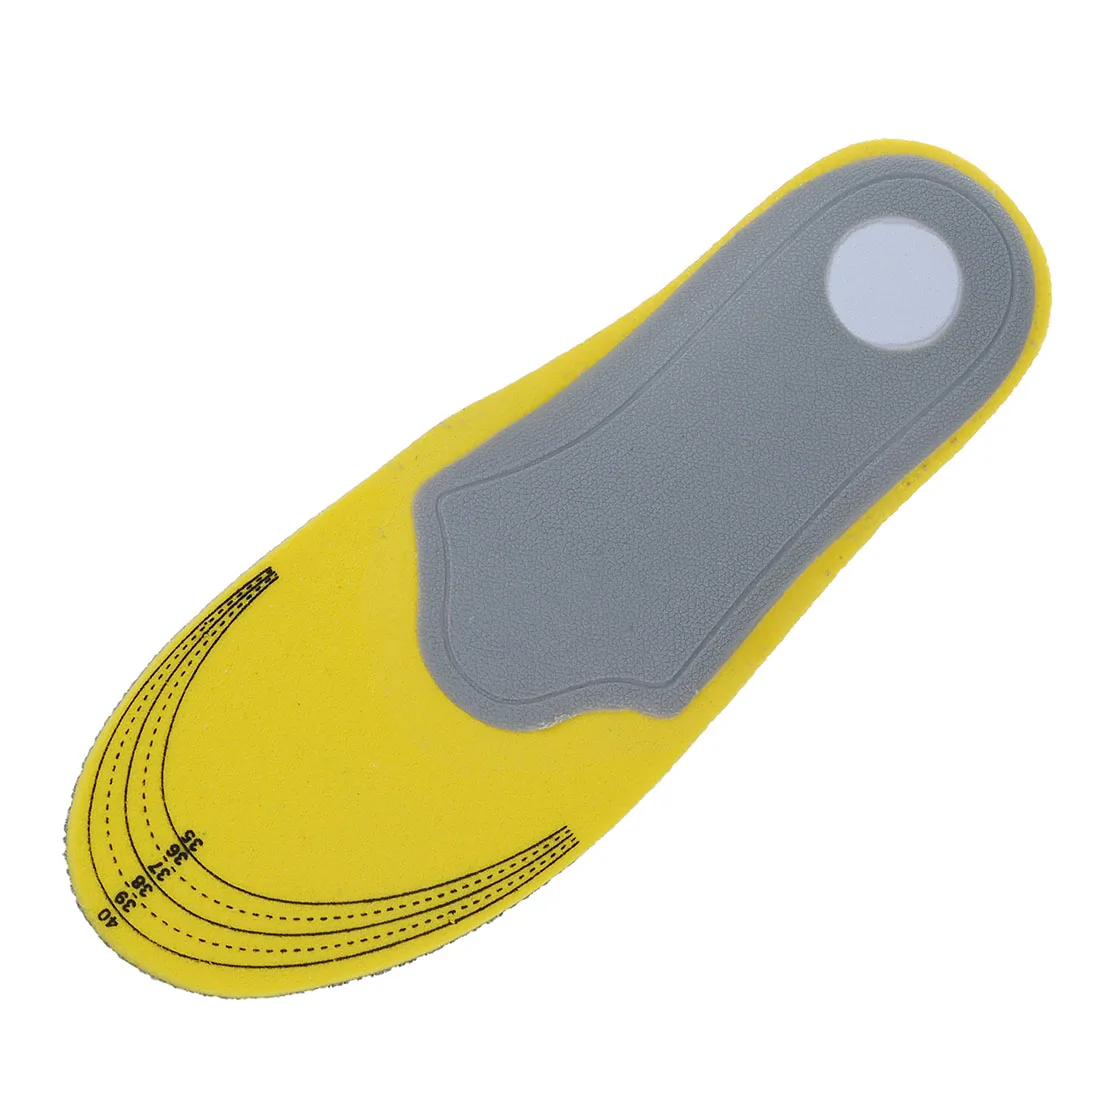 Стильные ортопедические стельки для обуви, высокие стельки для поддержки свода стопы, желтые+ серые